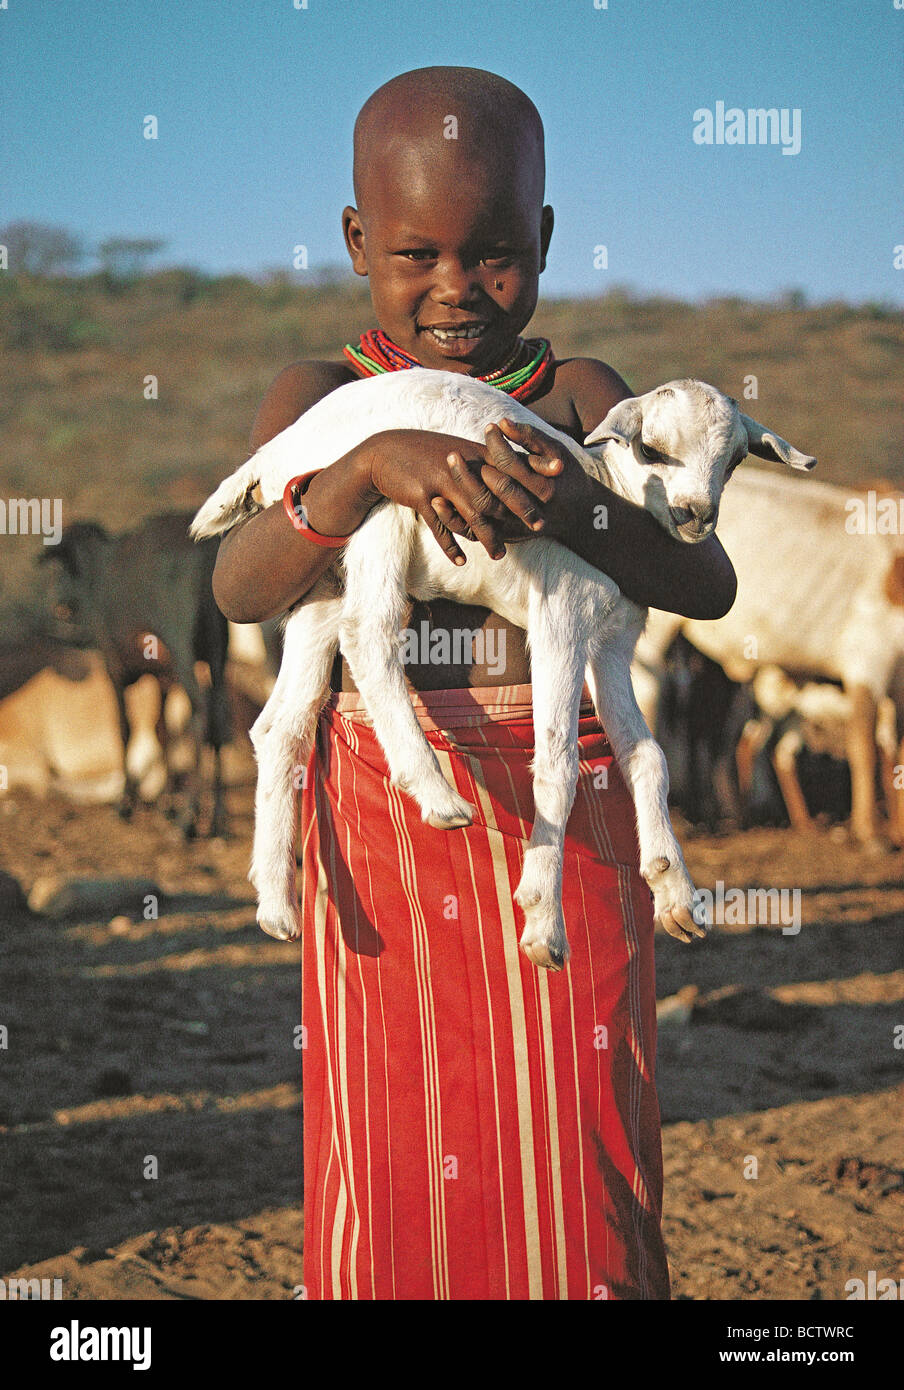 Young Samburu girl with a big smile holding a baby Goat near Samburu National Reserve Kenya East Africa Stock Photo